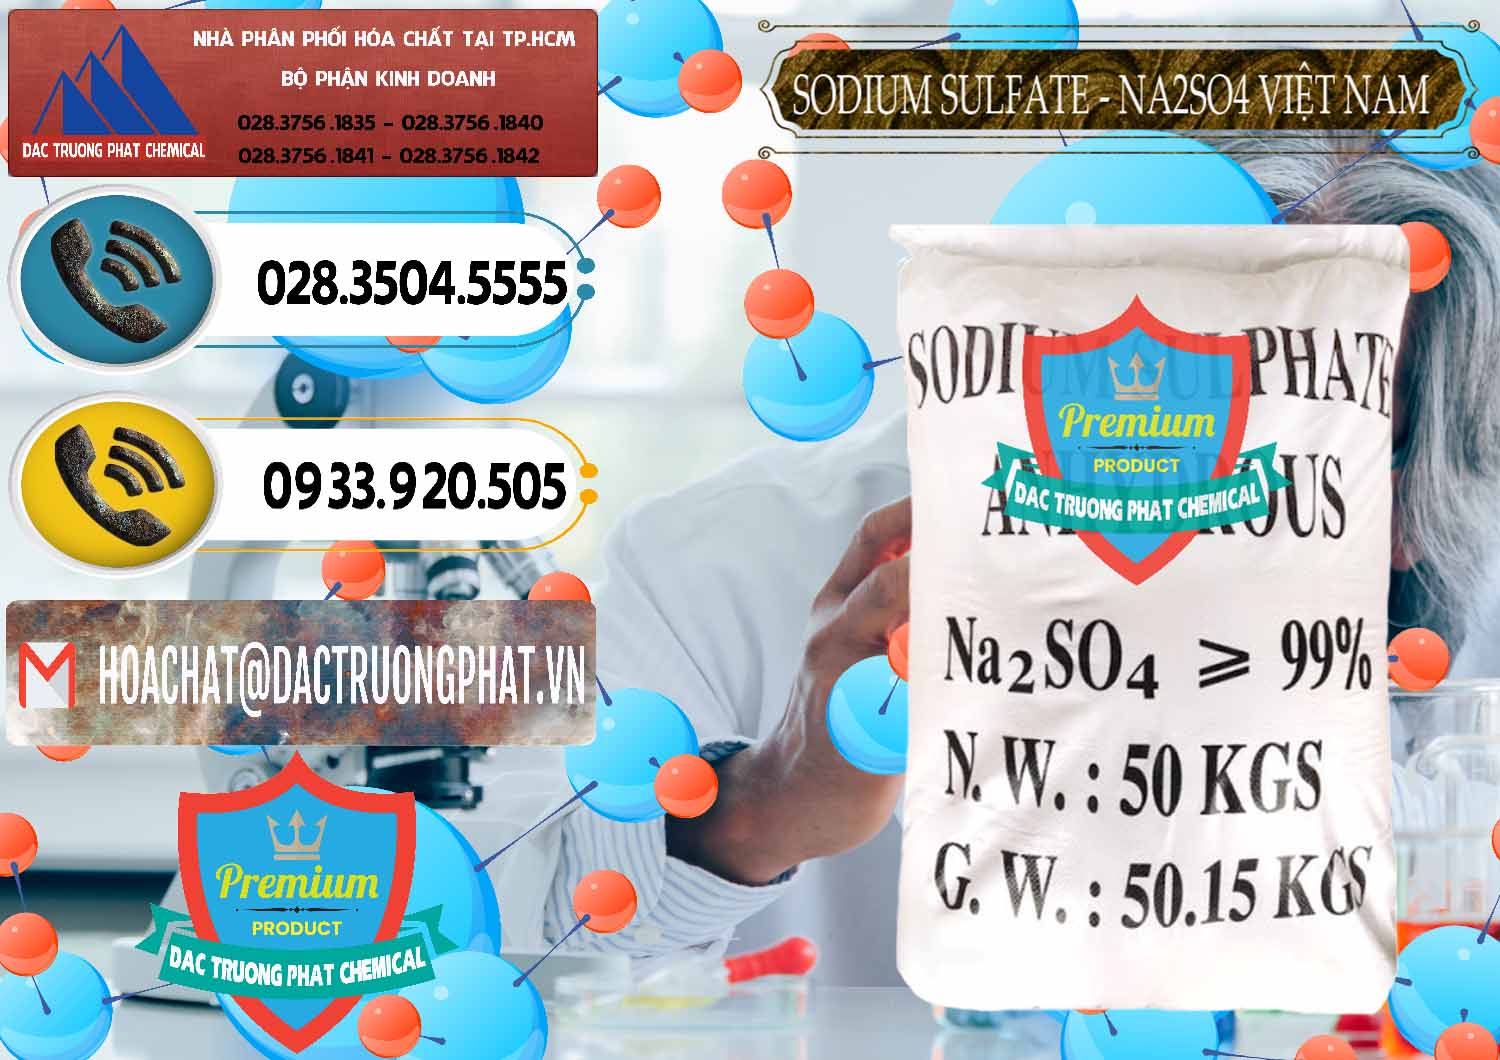 Cty chuyên cung ứng - bán Sodium Sulphate - Muối Sunfat Na2SO4 Việt Nam - 0355 - Đơn vị cung cấp và kinh doanh hóa chất tại TP.HCM - hoachatdetnhuom.vn